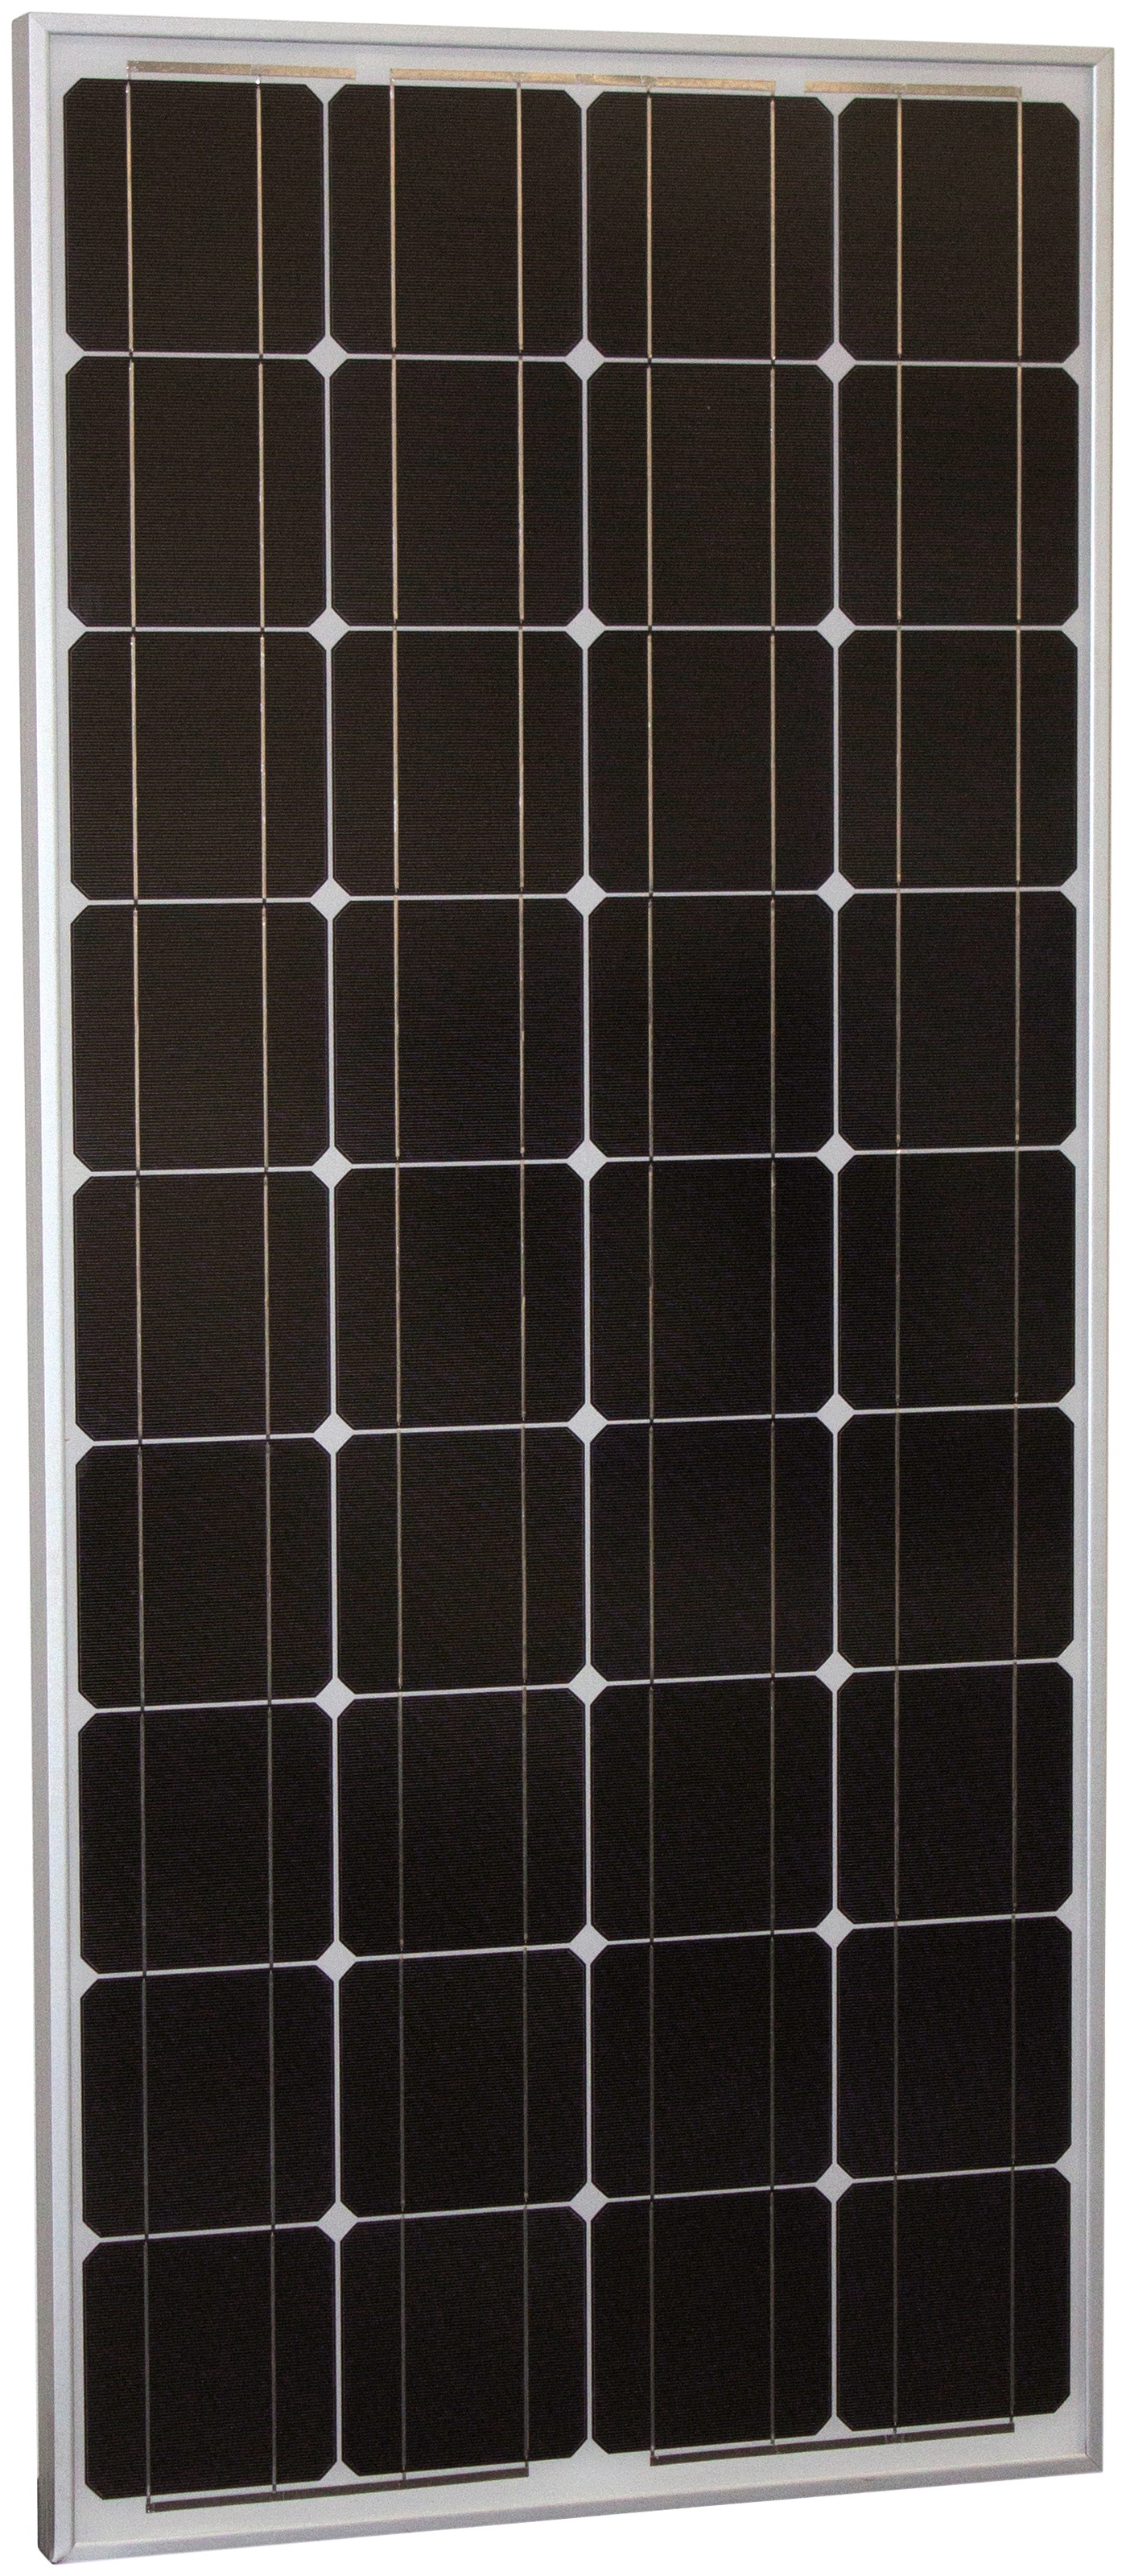 Phaesun Solarmodul »Sun Plus 170«, 12 VDC, IP65 Schutz